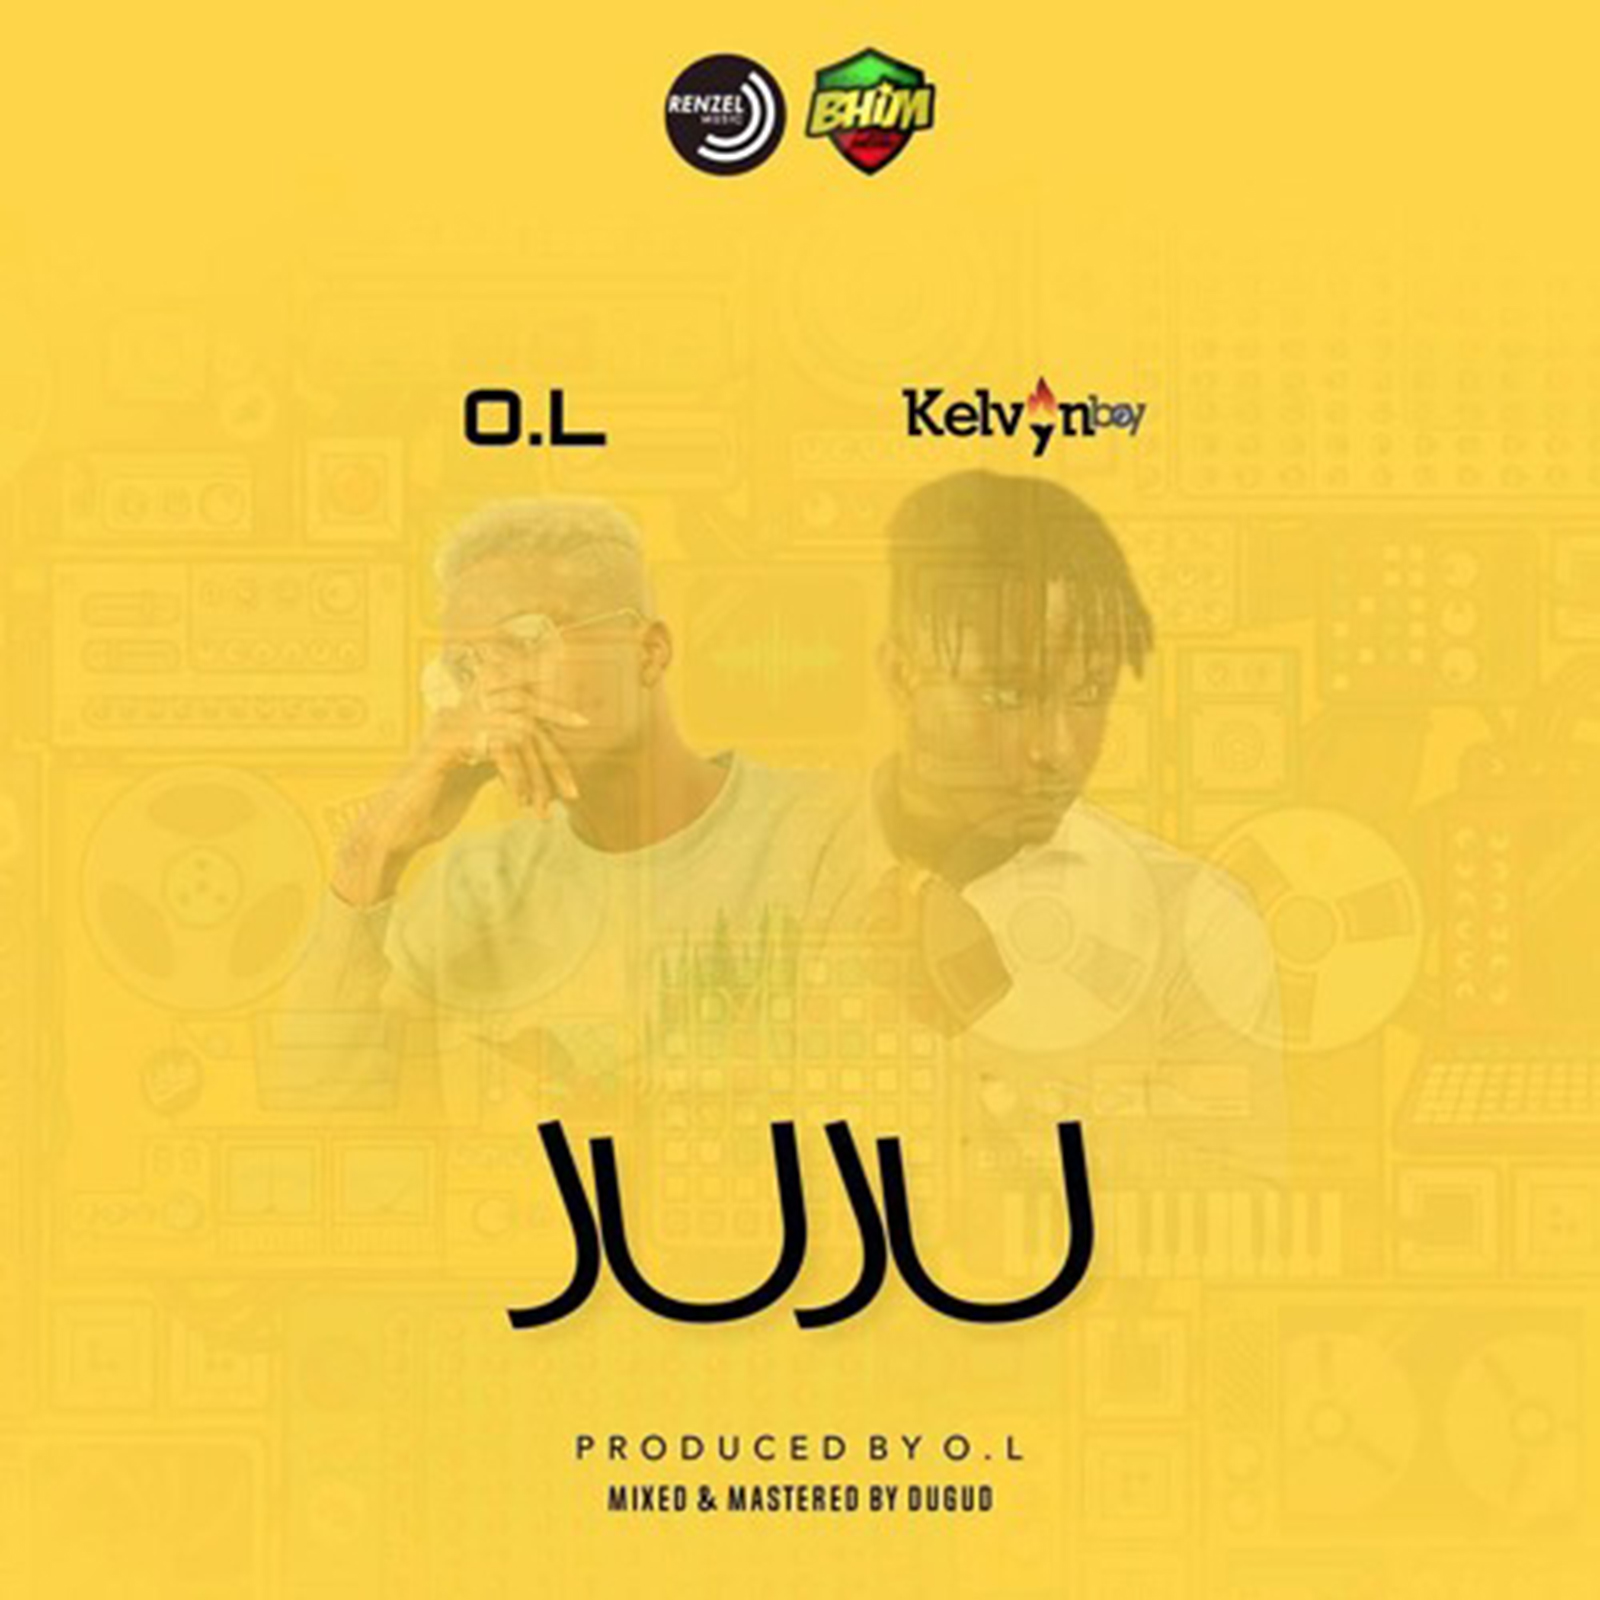 Juju by O.L feat. Kelvynboy